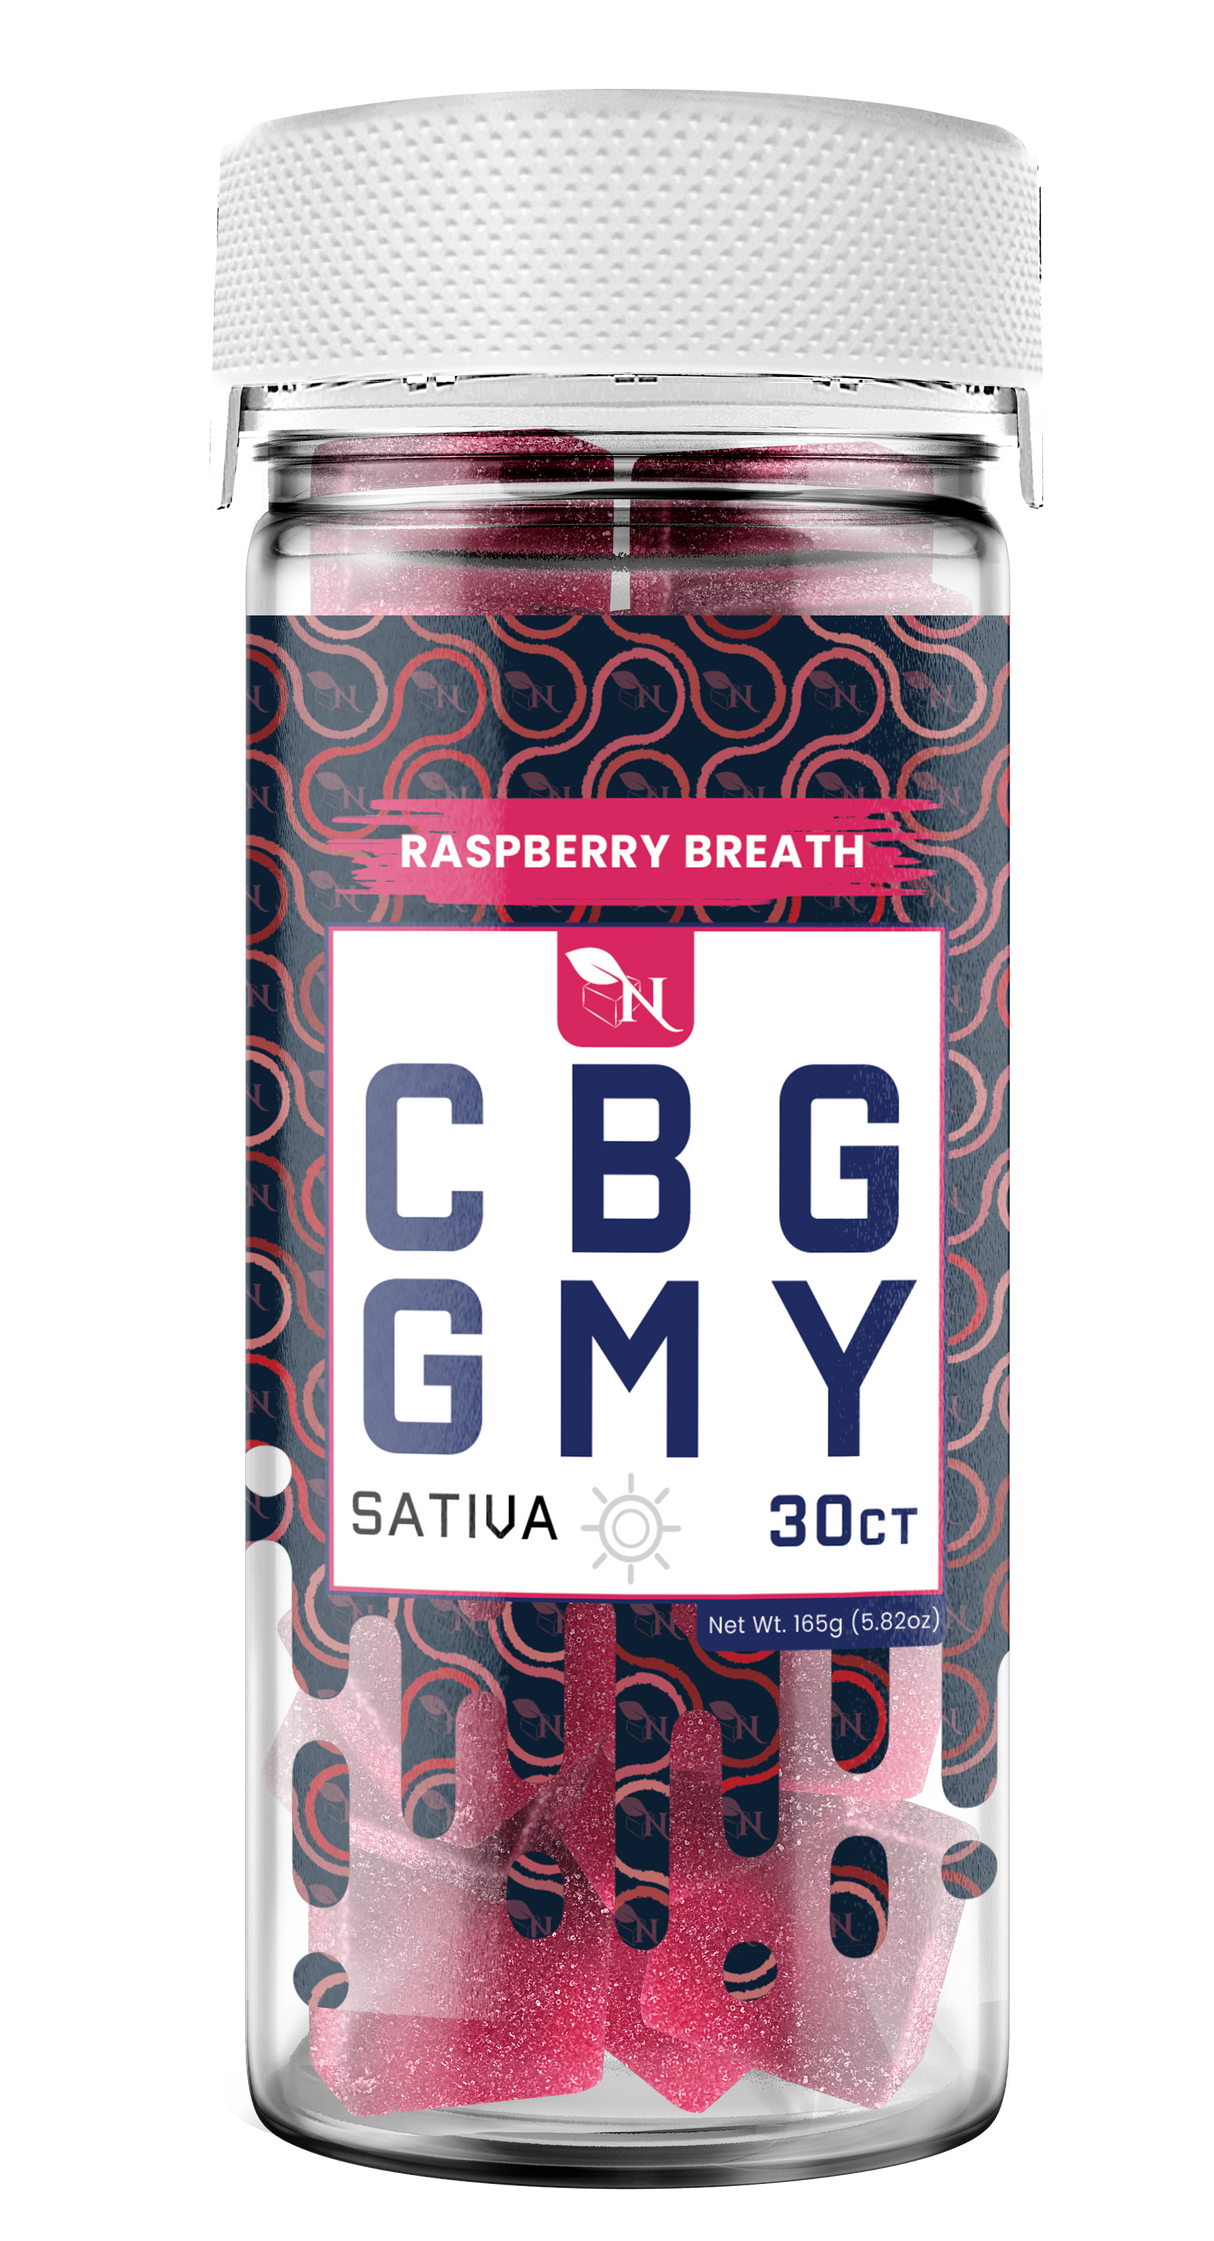 AGFN CBG Gummy: Raspberry Breath Sativa (1500MG)